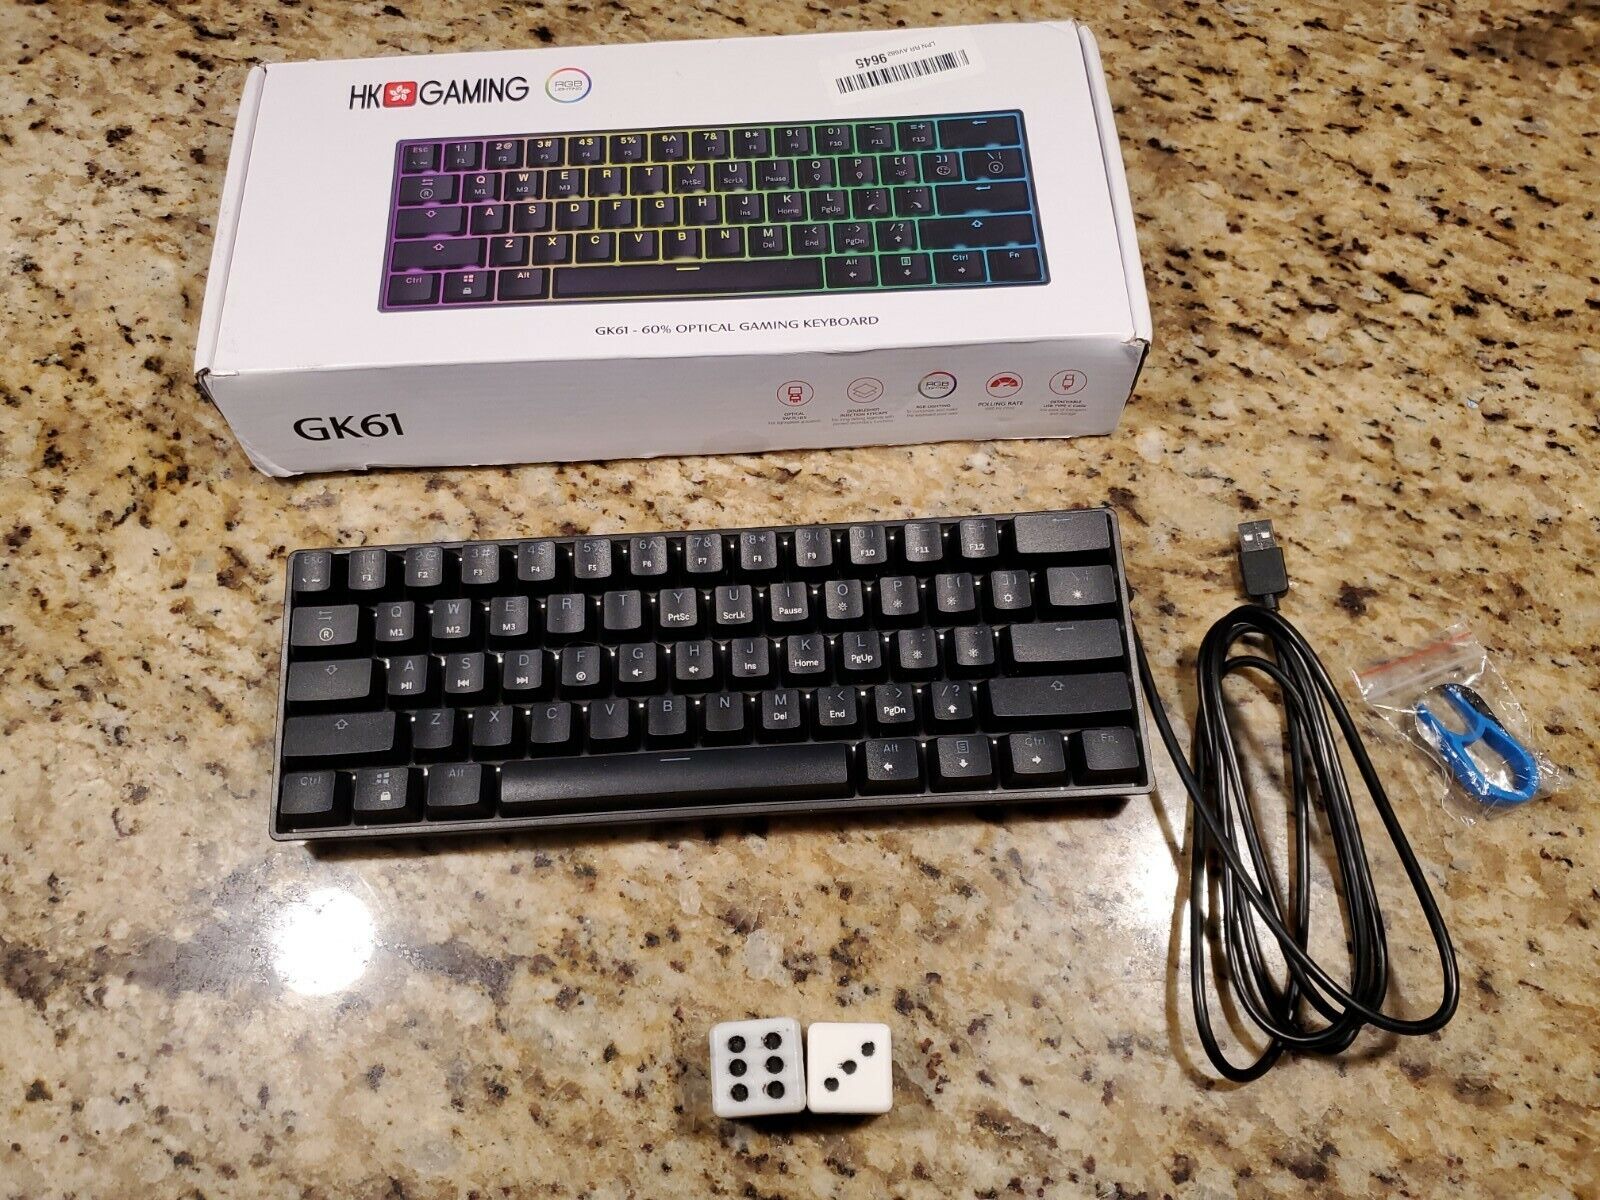 HK Gaming GK61 V2 Mechanical Gaming Keyboard with RGB Lighting. White